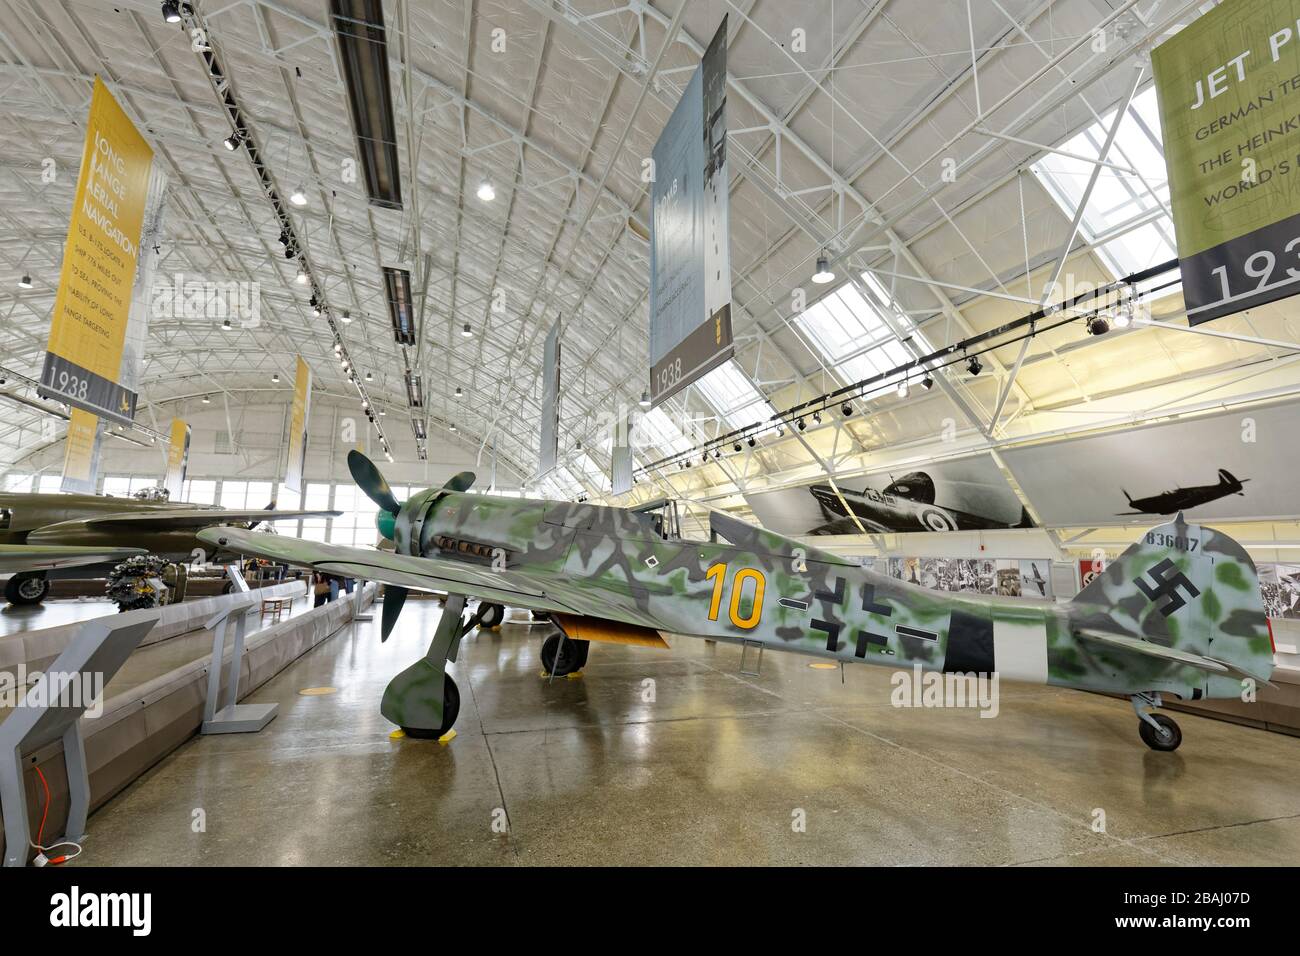 19 SETTEMBRE 2015, EVERETT, WA: Grande scatto dell'ultimo Focke-Wulf FW 190 D-13 sopravvissuto in mostra in un museo della zona di Seattle. Foto Stock